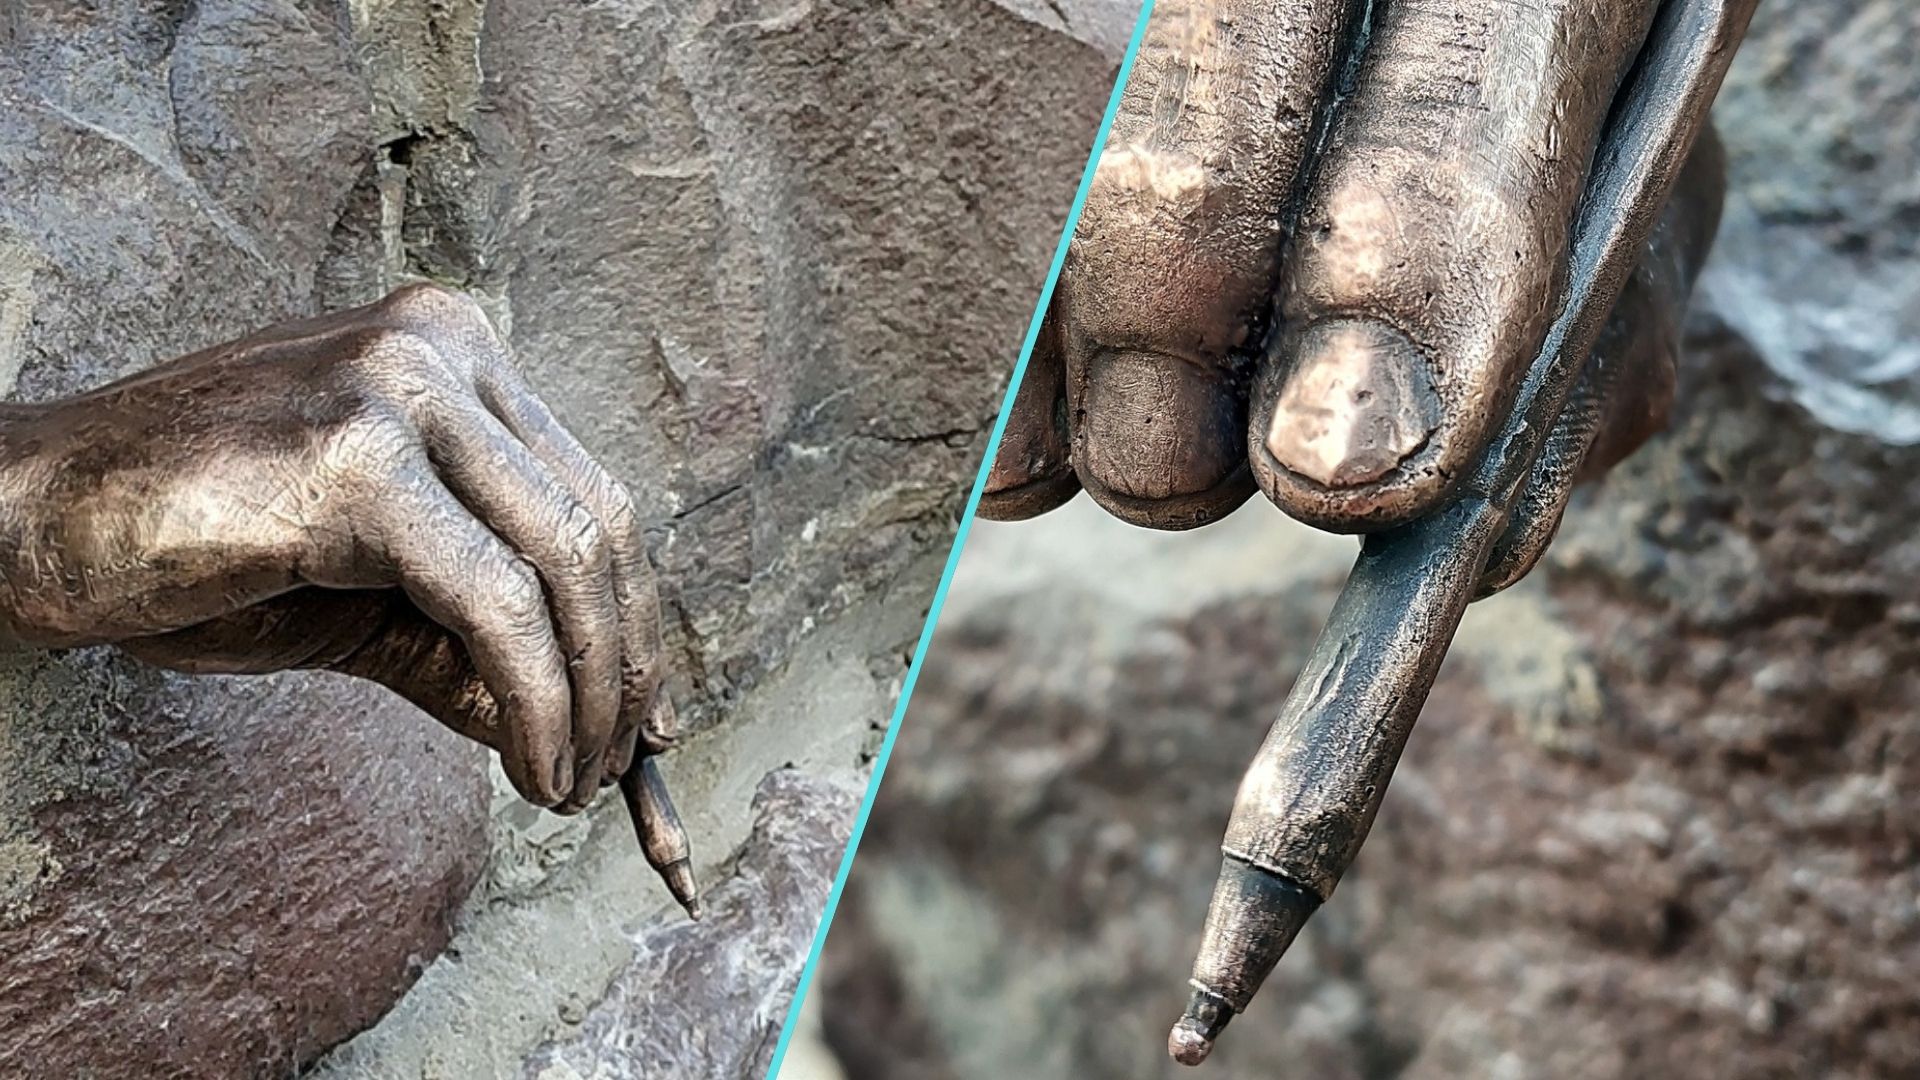 В Ужгороді відкрили міні-скульптуру на честь Ласло Біро (угор: Bíró László József), угорця за походженням, журналіста та винахідника сучасної кулькової ручки.